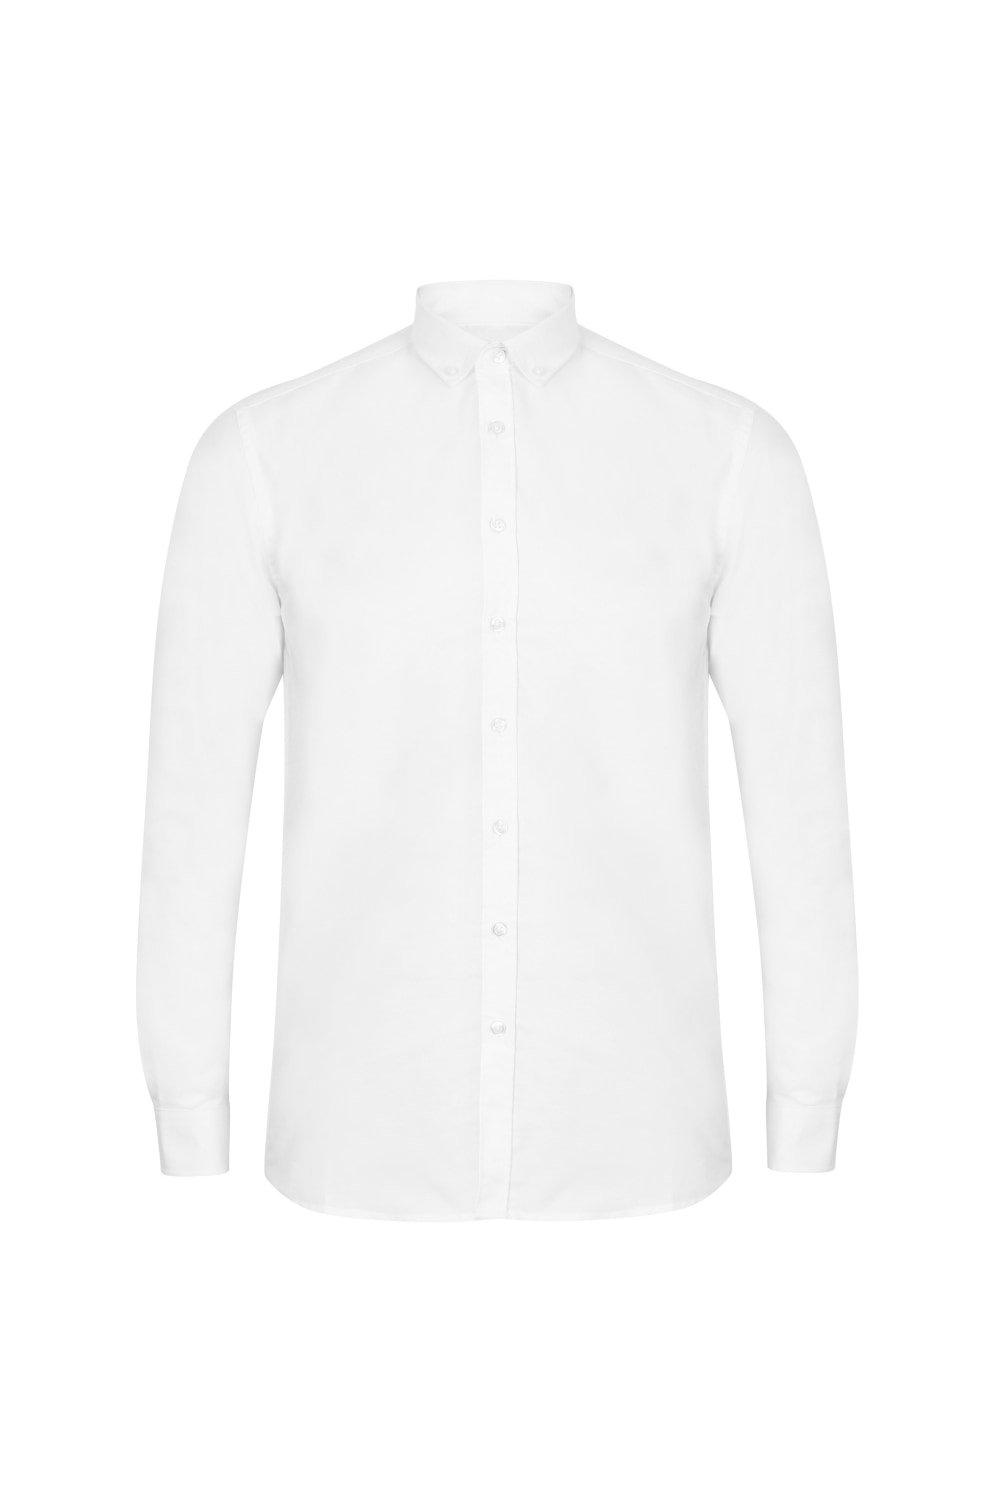 Современная оксфордская рубашка с длинными рукавами Henbury, белый кофта на пуговицах 40 размер